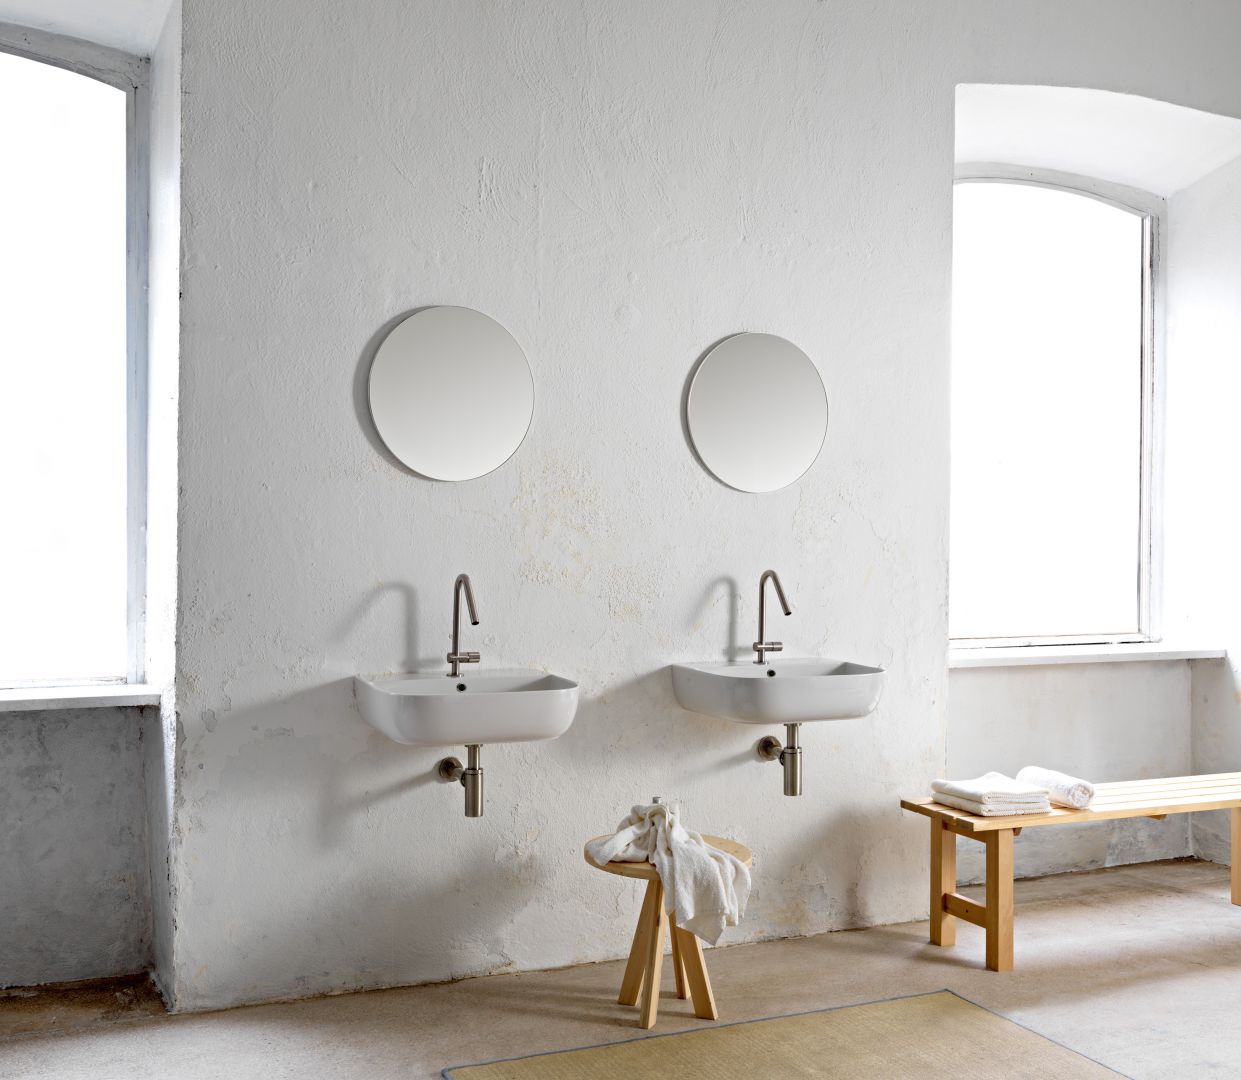 Podwieszane umywalki z kolekcji Glam marki Scarabeo Ceramiche. Fot. Scarabeo Ceramiche